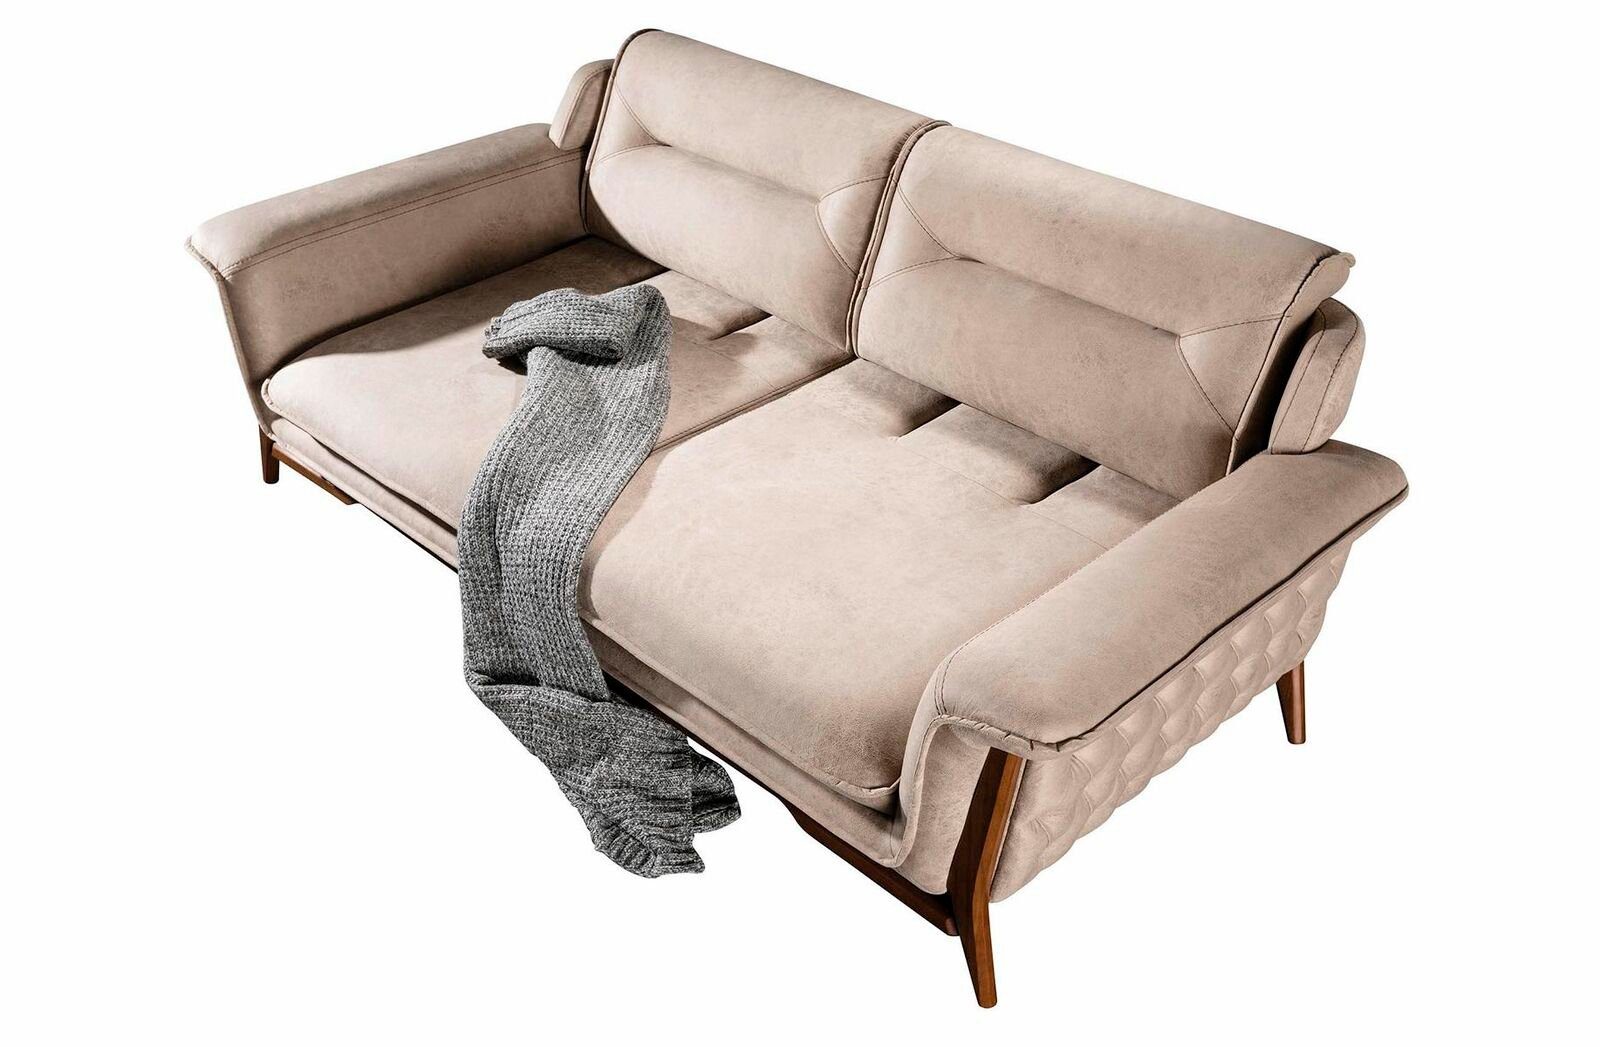 JVmoebel Sofa Beiger Dreisitzer Luxus 3-Sitzer Sofa Moderne Couch Stilvolles Design, 1 Teile, Made in Europe